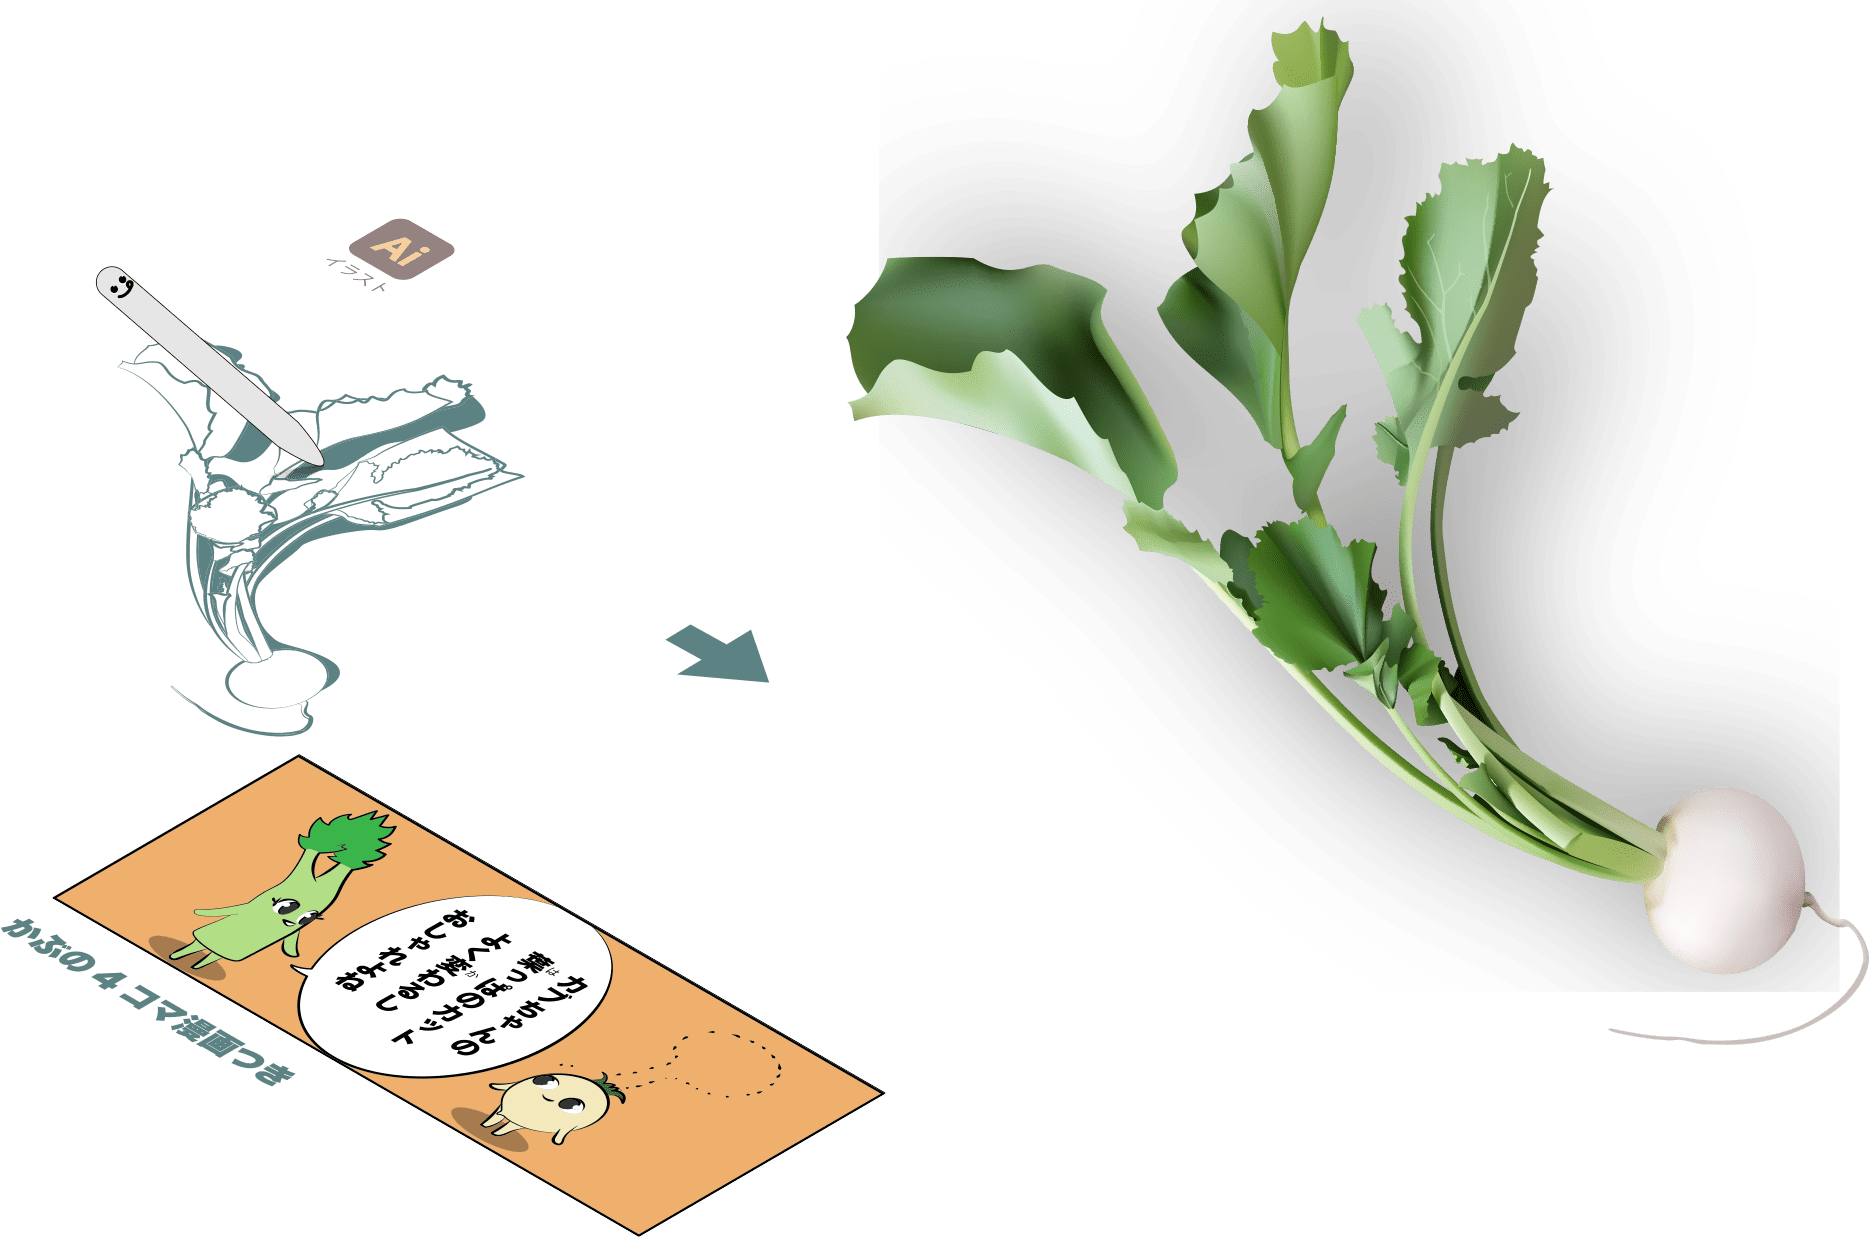 かぶの消化酵素で胃腸をサポート 聖護院蕪や千枚漬けも詳しく解説 Turnip